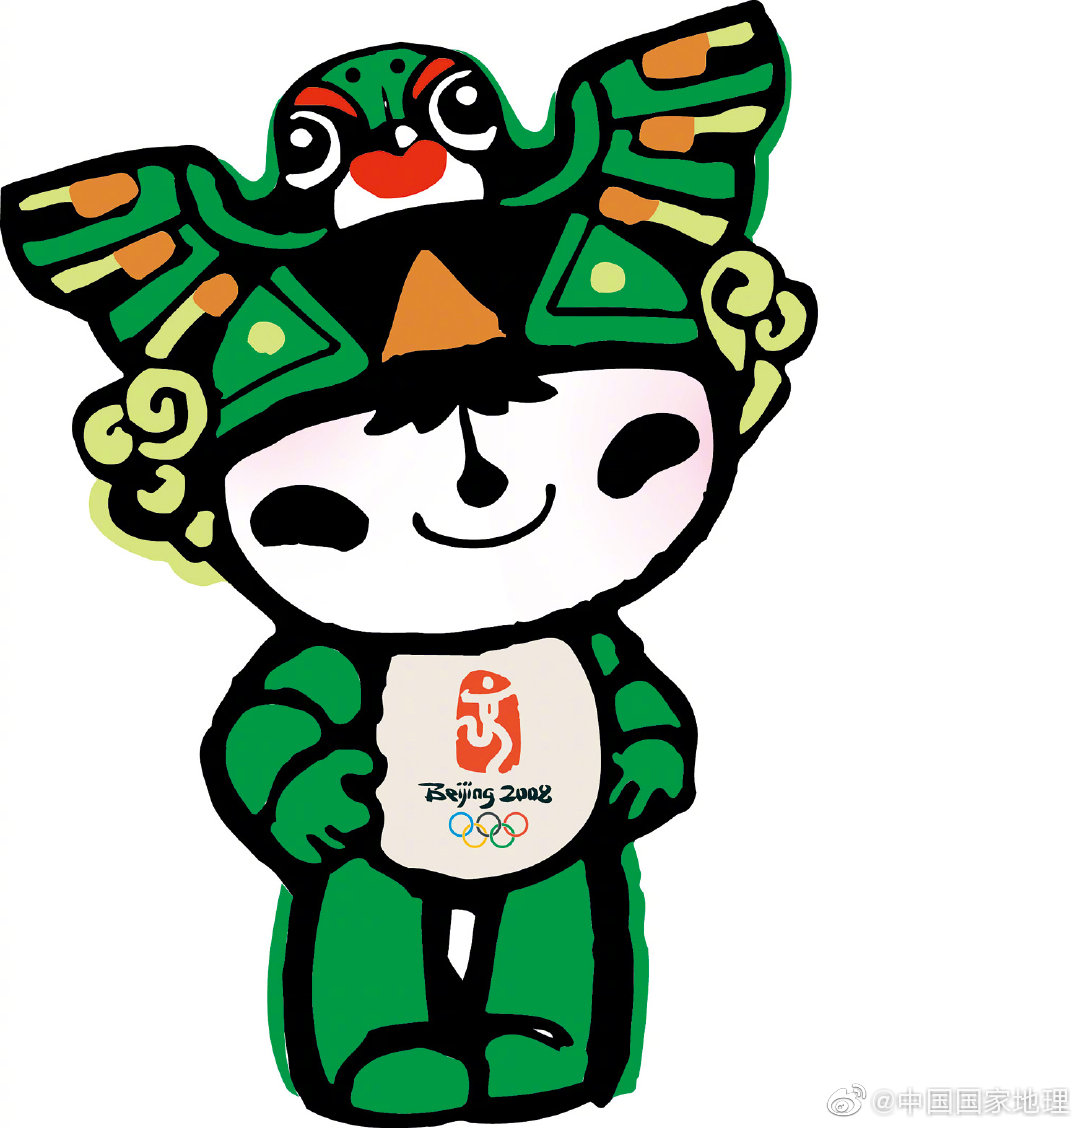 北京雨燕貌不惊人,却是2008年奥运会吉祥物福娃妮妮的原型之一